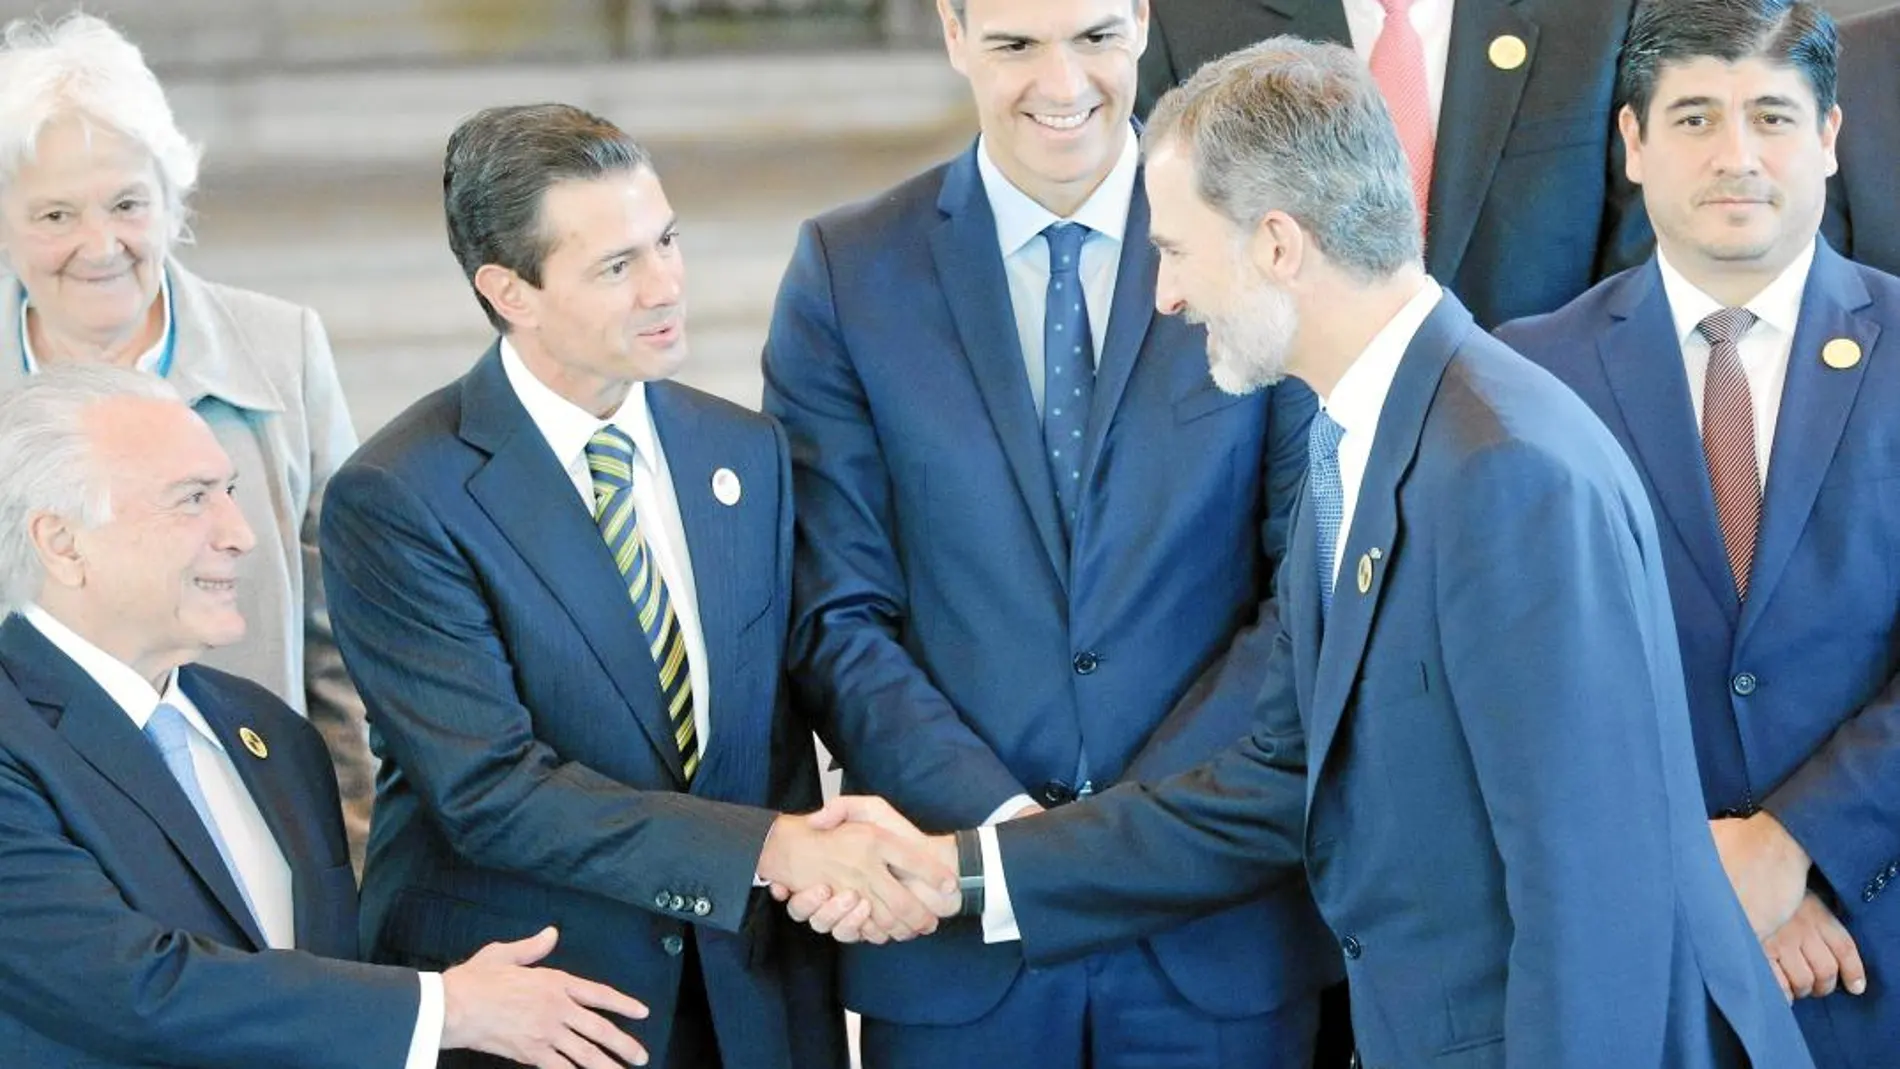 Cumbre de Jefes de Estado. Felipe VI saluda al presidente mexicano, Enrique Peña Nieto, y al brasileño, Michel Temer, en presencia de Pedro Sánchez, ayer en Guatemala / Ap